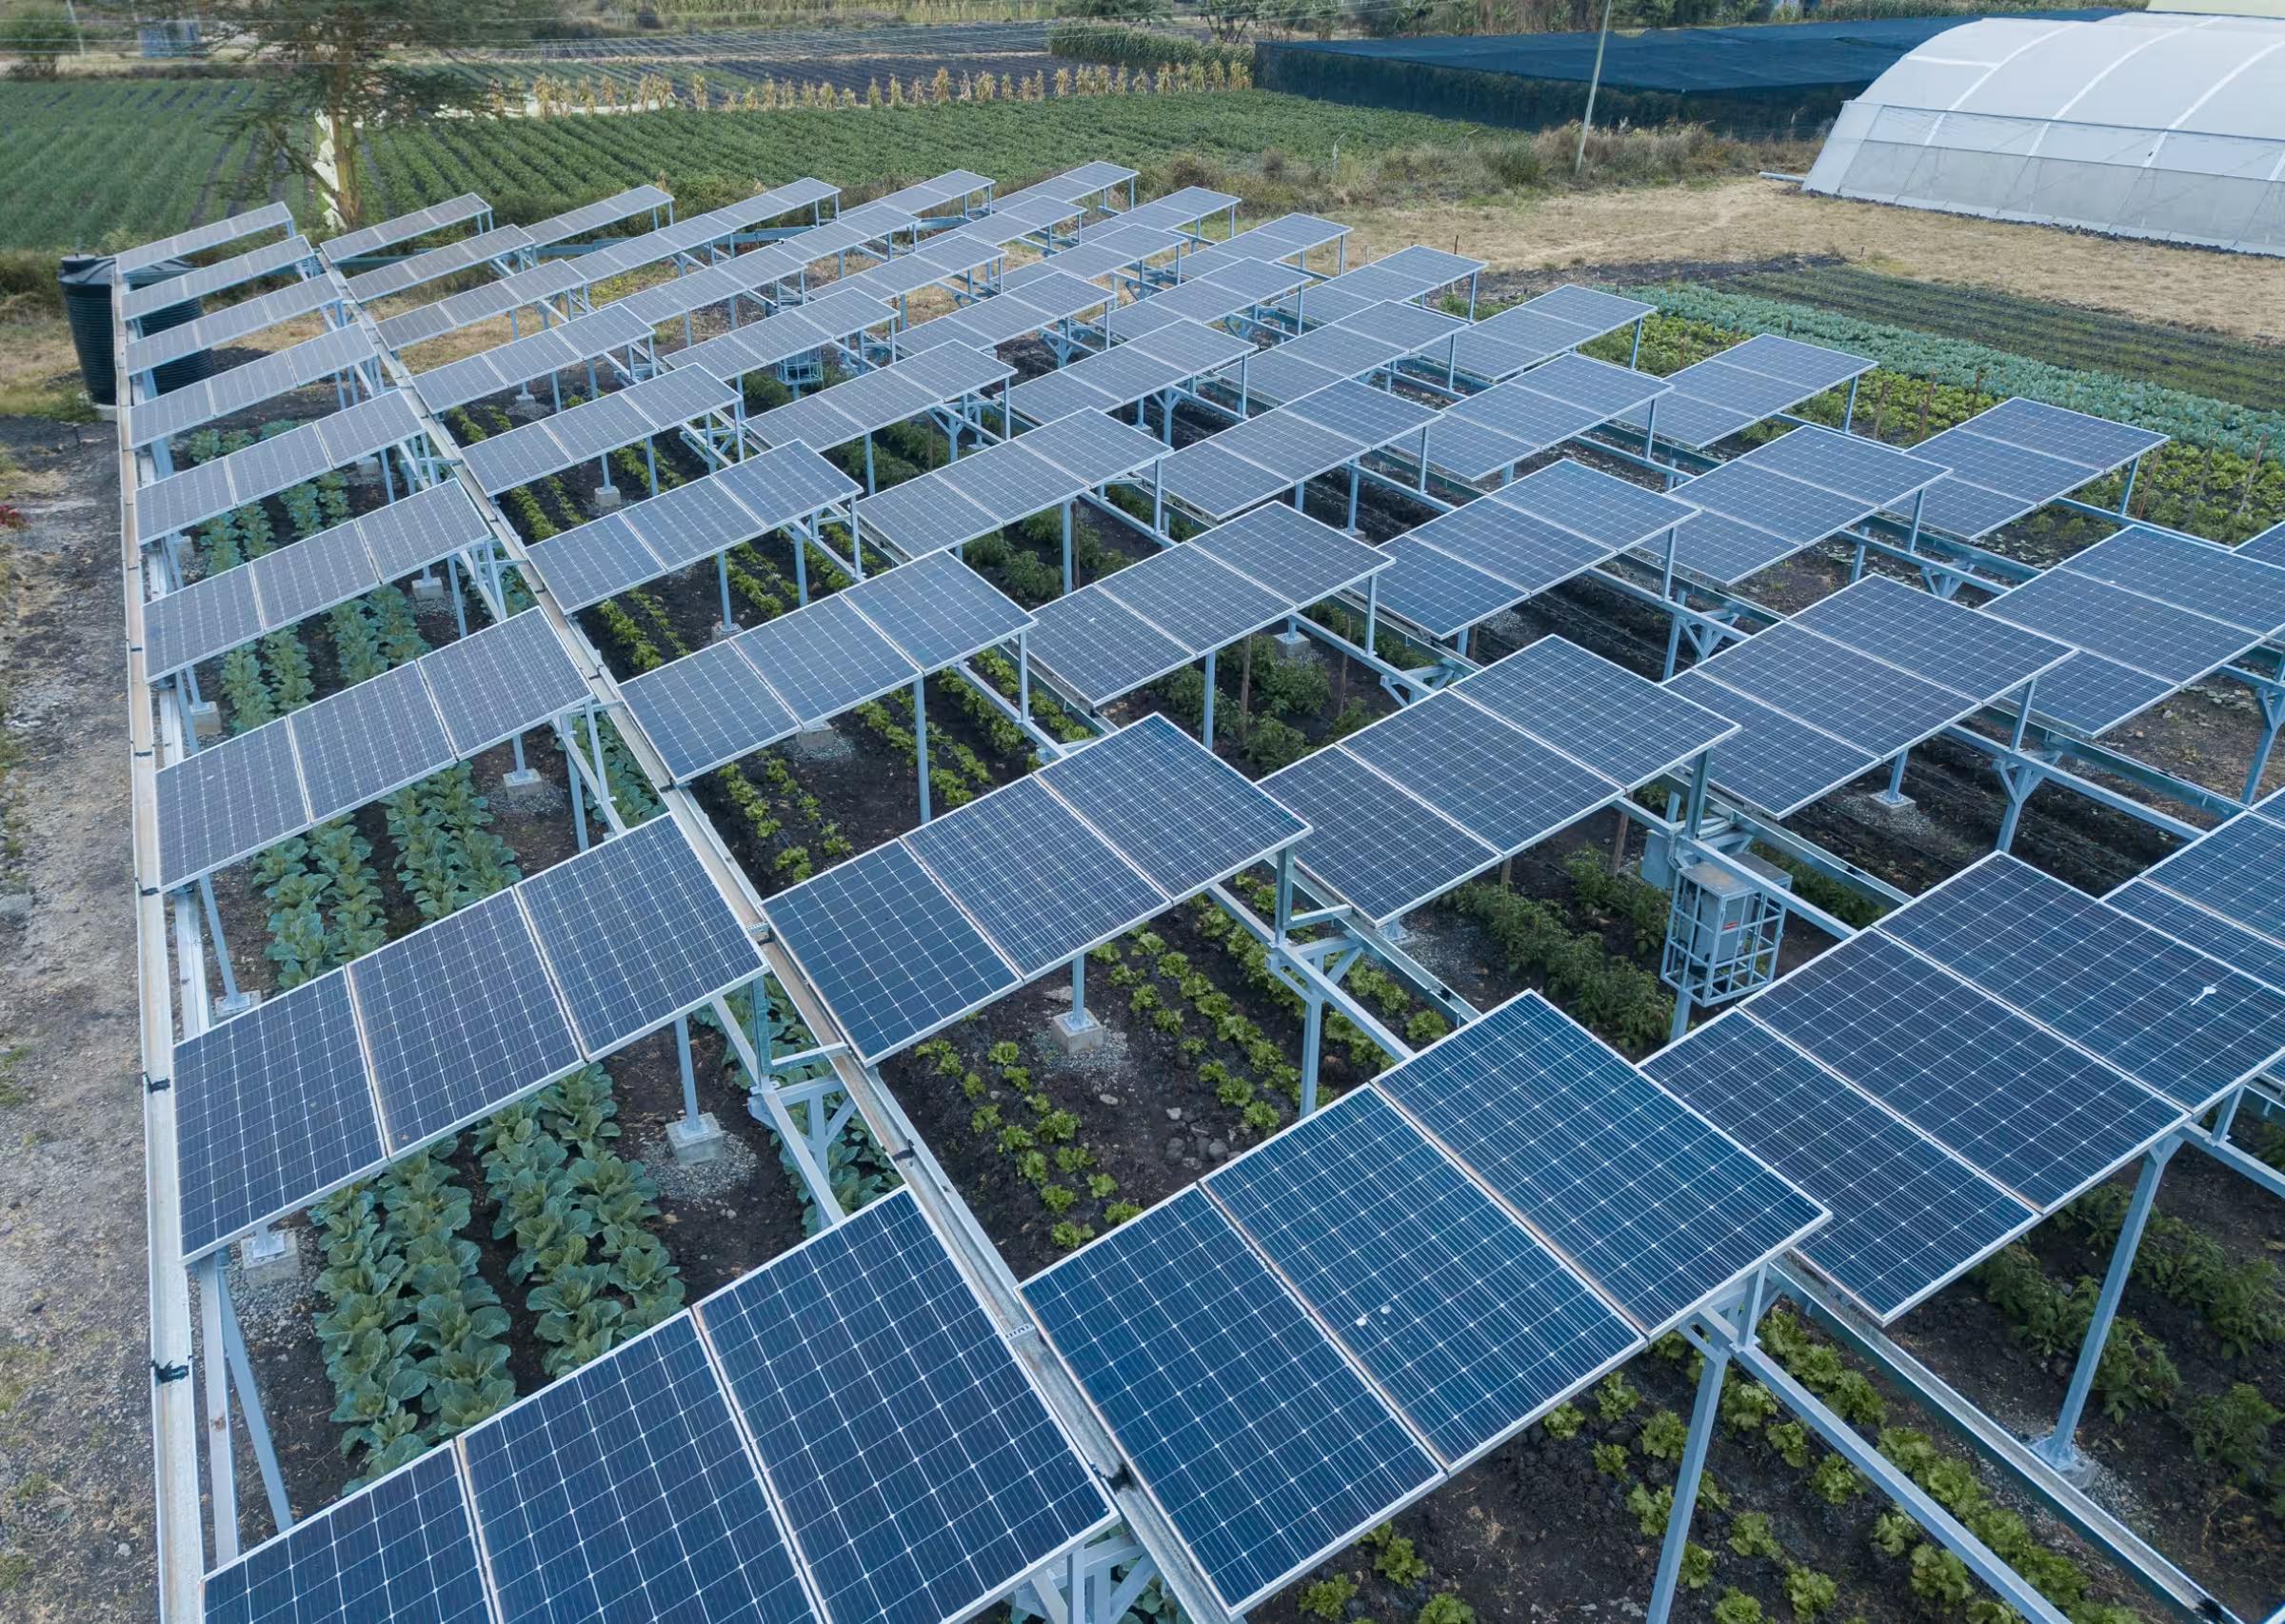 Agrivoltaico: Come Funziona e che Vantaggi ci sono quando Agricoltura e Fotovoltaico vengono uniti